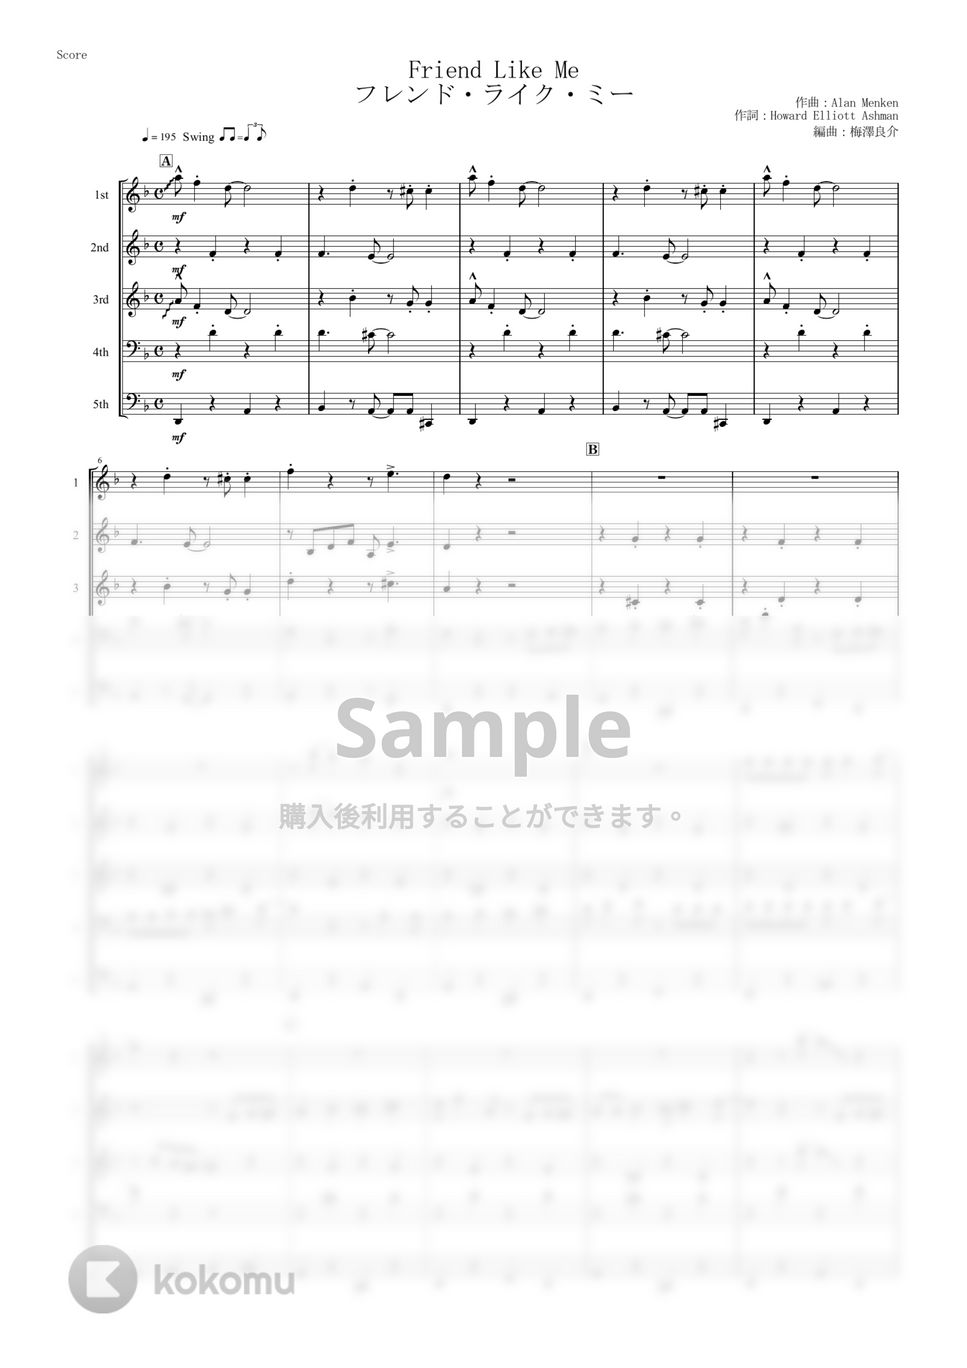 アラジン - フレンド・ライク・ミー (5重奏) by muta-sax